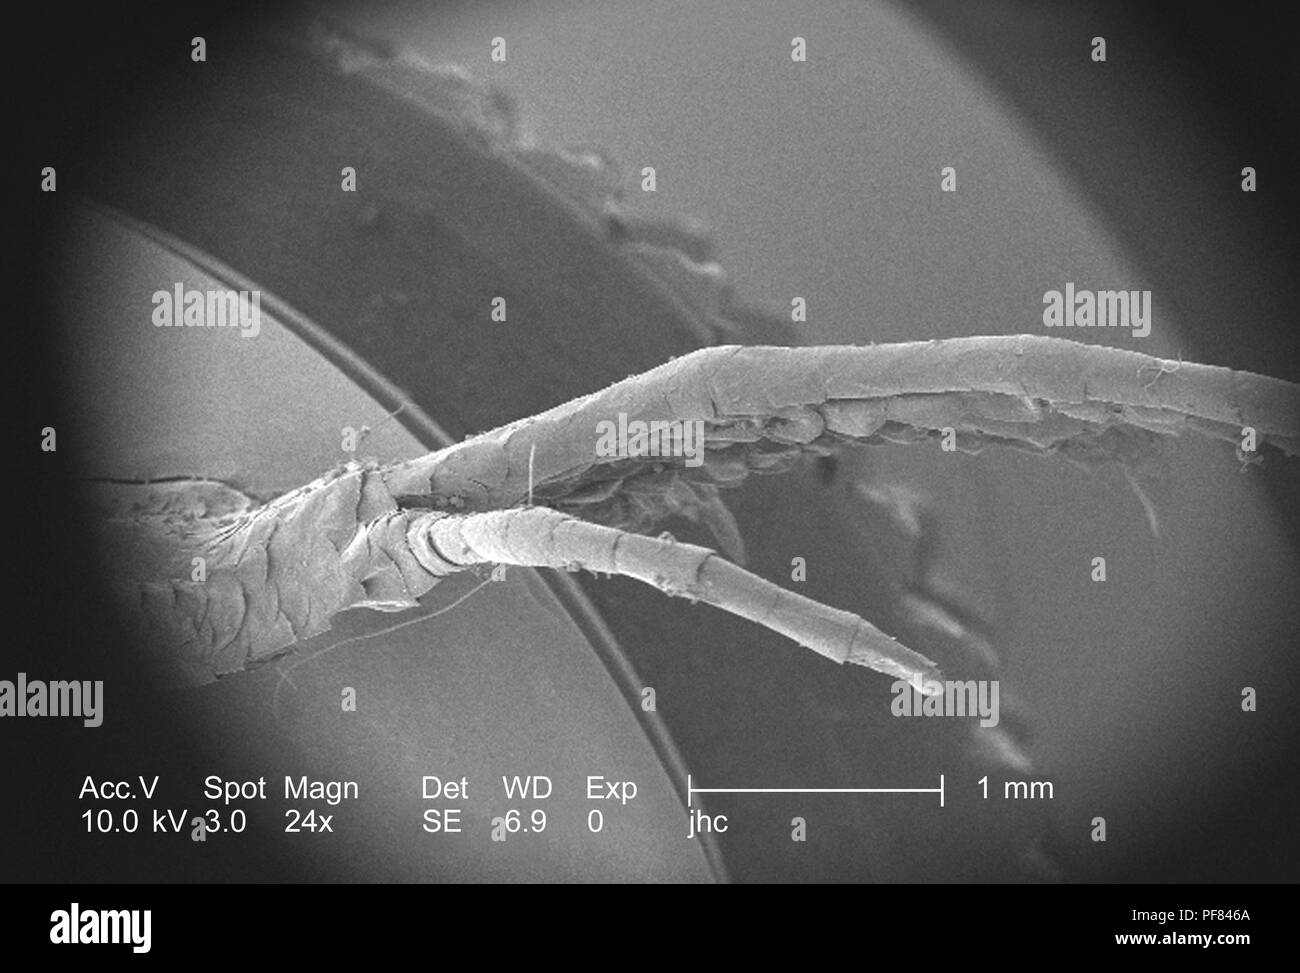 Caratteristiche morfologiche di un defunto lizard piede trovati in Decatur, Georgia, ha rivelato nel 24x di scansione ingrandita al microscopio elettronico (SEM) immagine, 2006. Immagine cortesia di centri per il controllo delle malattie (CDC) / William L. Nicholson, Ph.D. Cal Welbourn, Ph.D. Gary R. Mullen. () Foto Stock